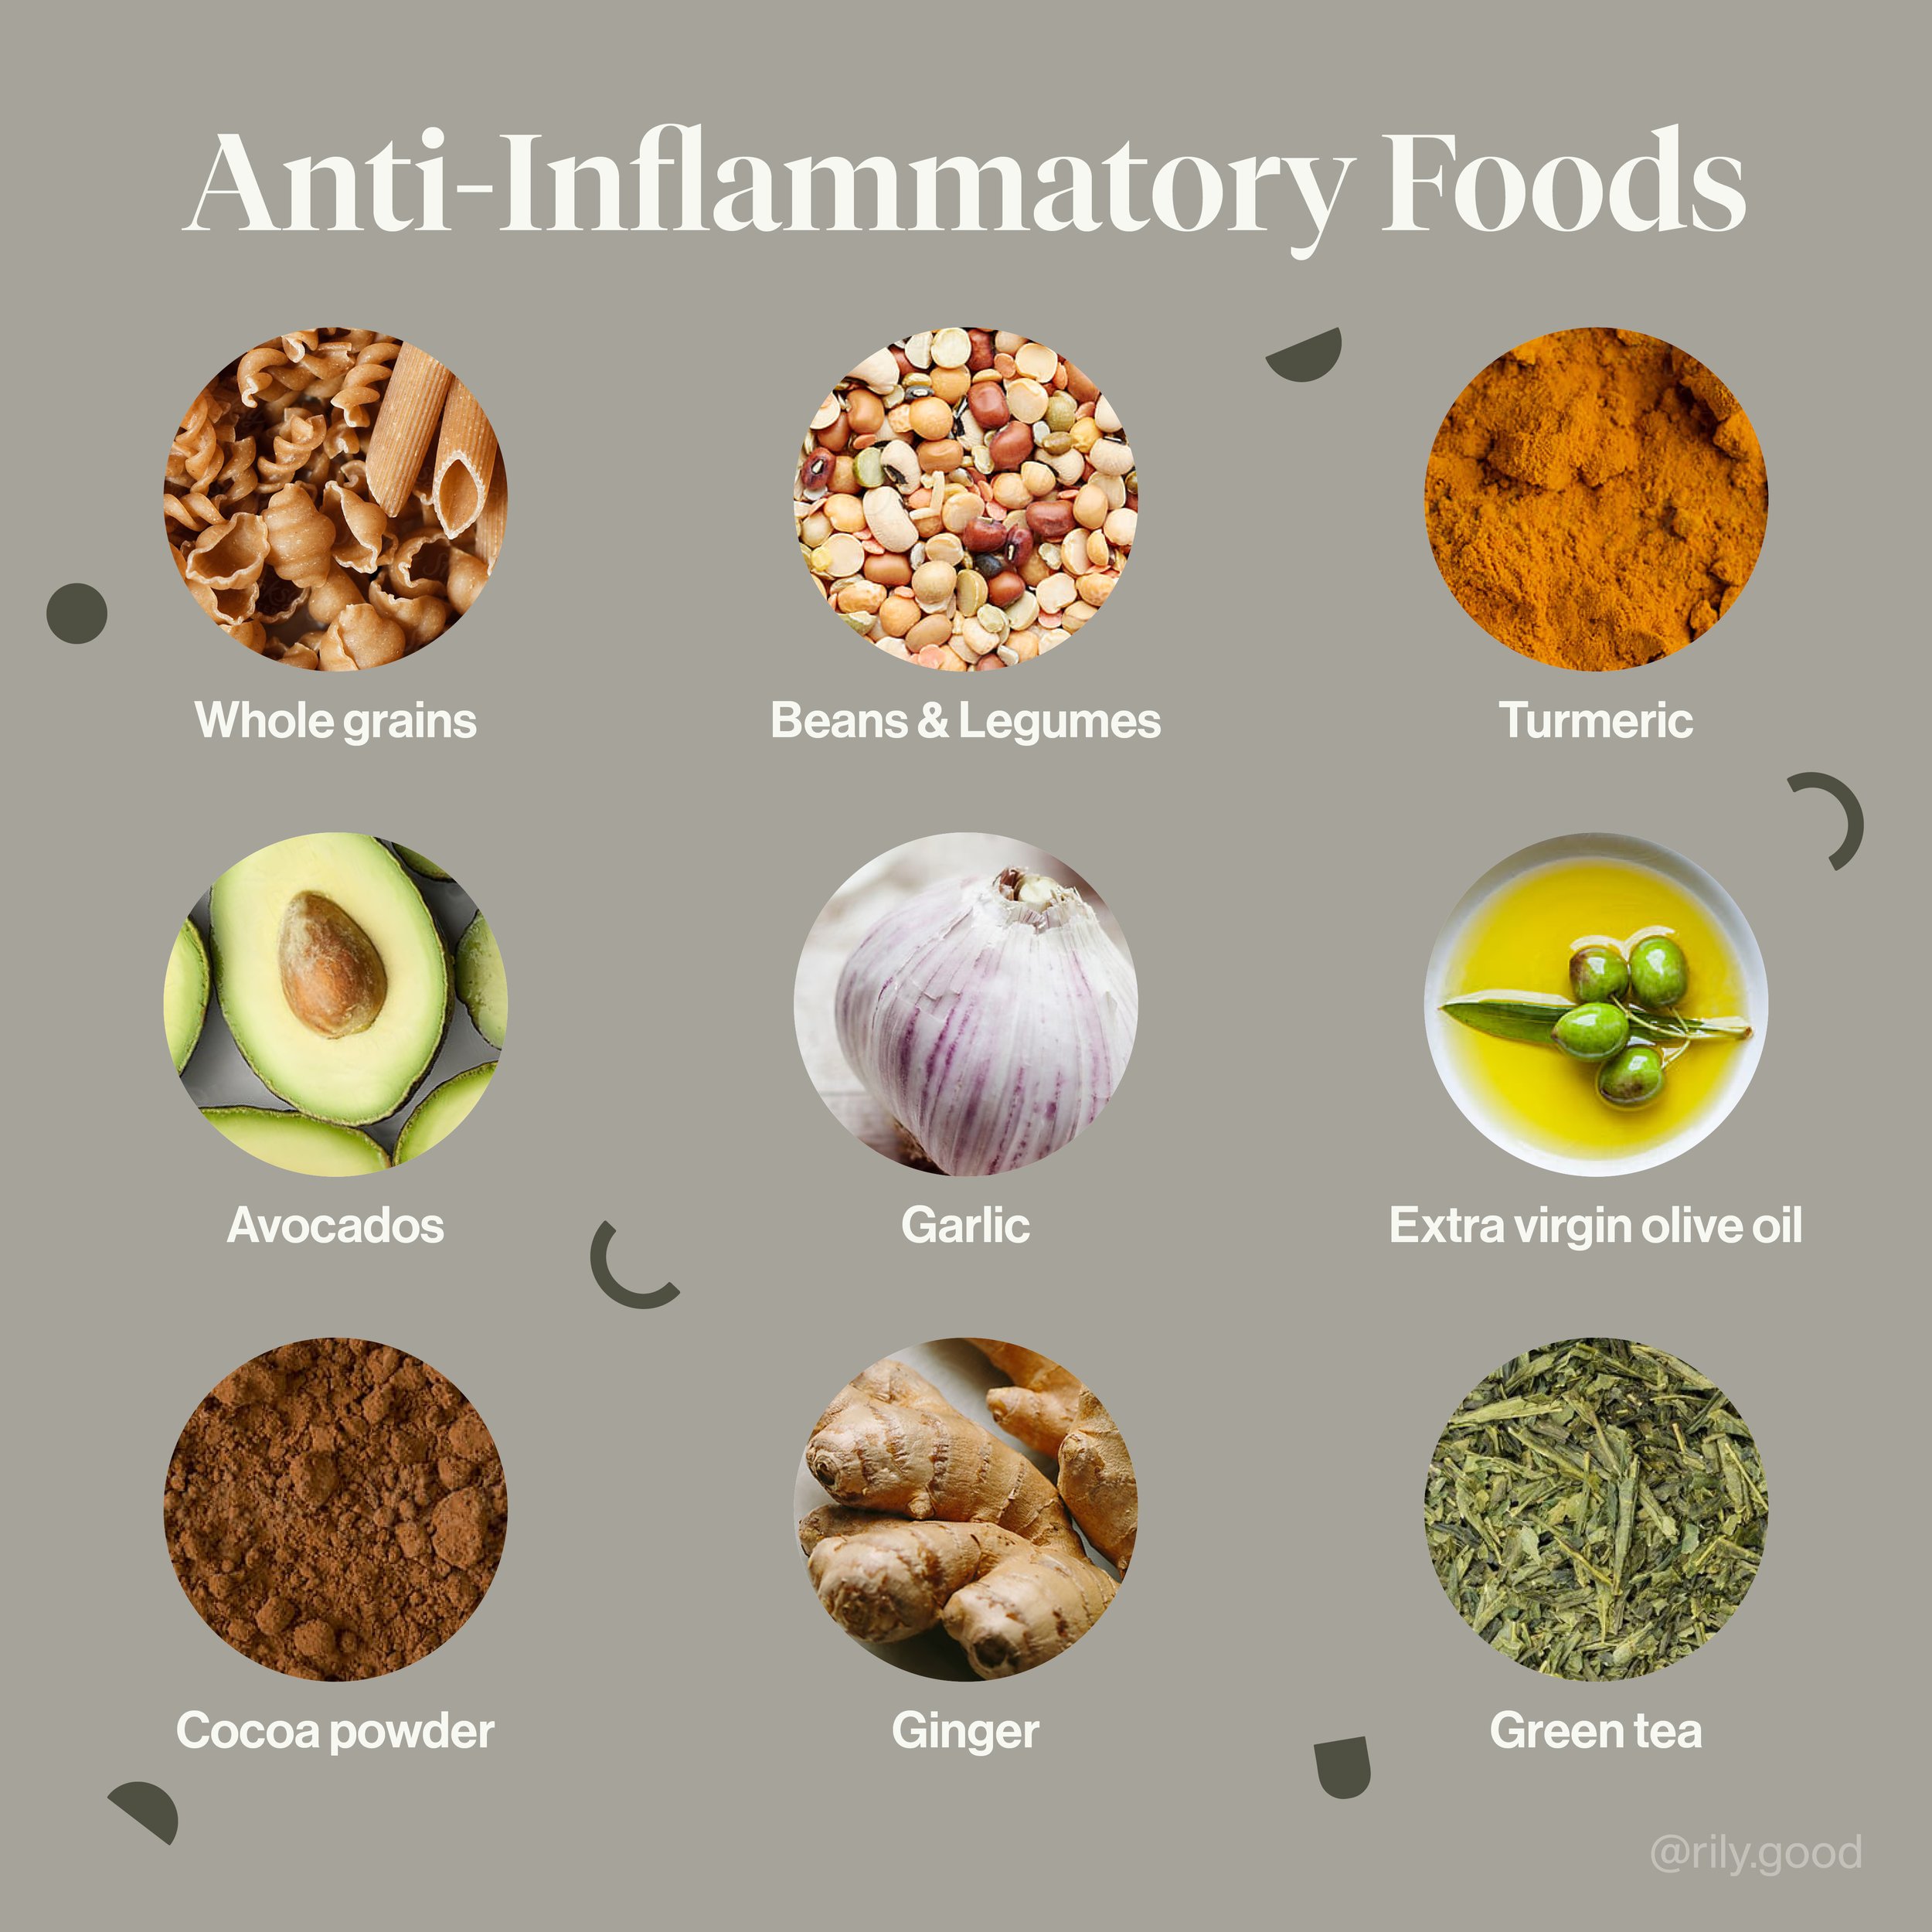 Anti-InflammatoryFoods.jpg